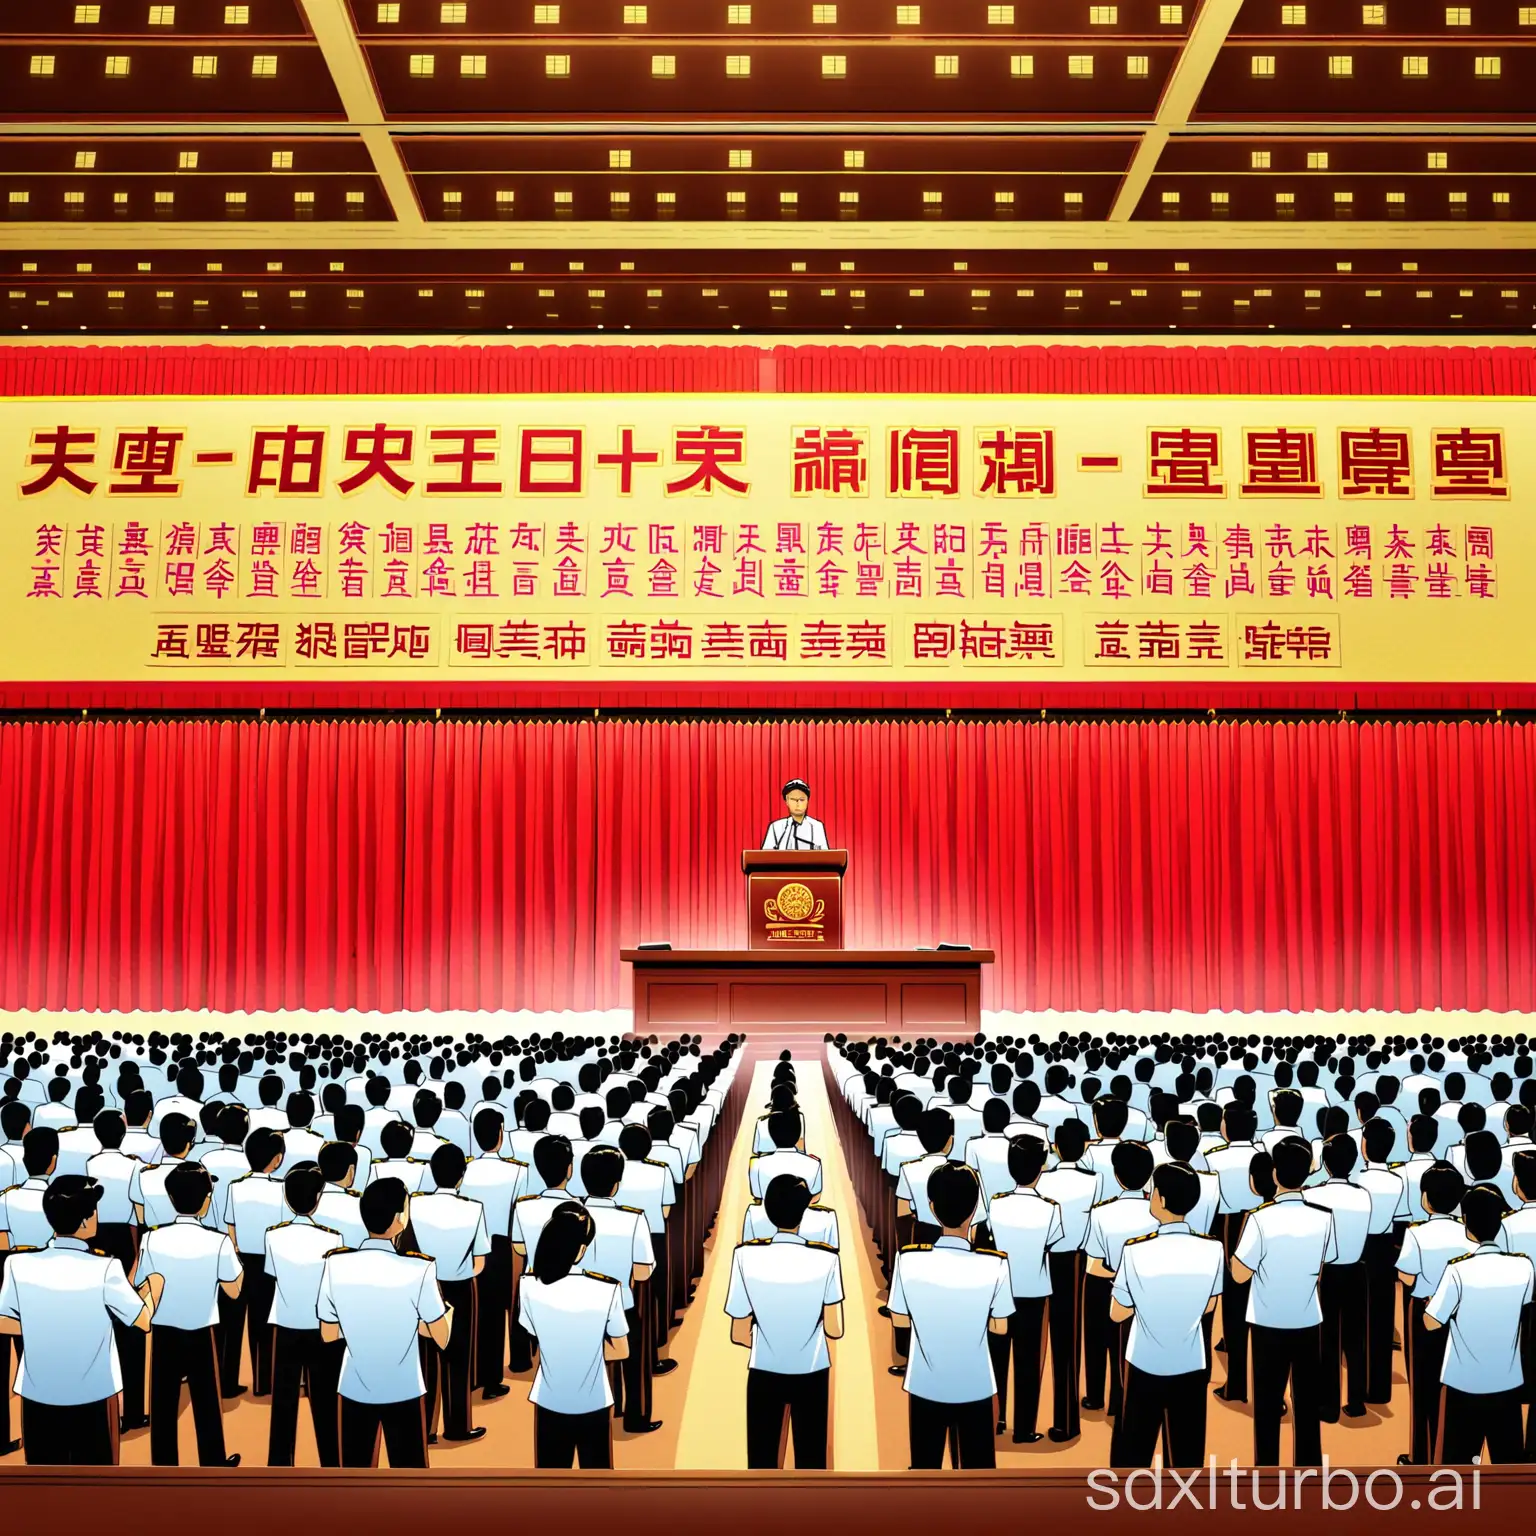 中国邮政储蓄银行下，一个人在拿着合法合规的条文站在台上朗读，很多员工身穿制服站在台下举手宣誓